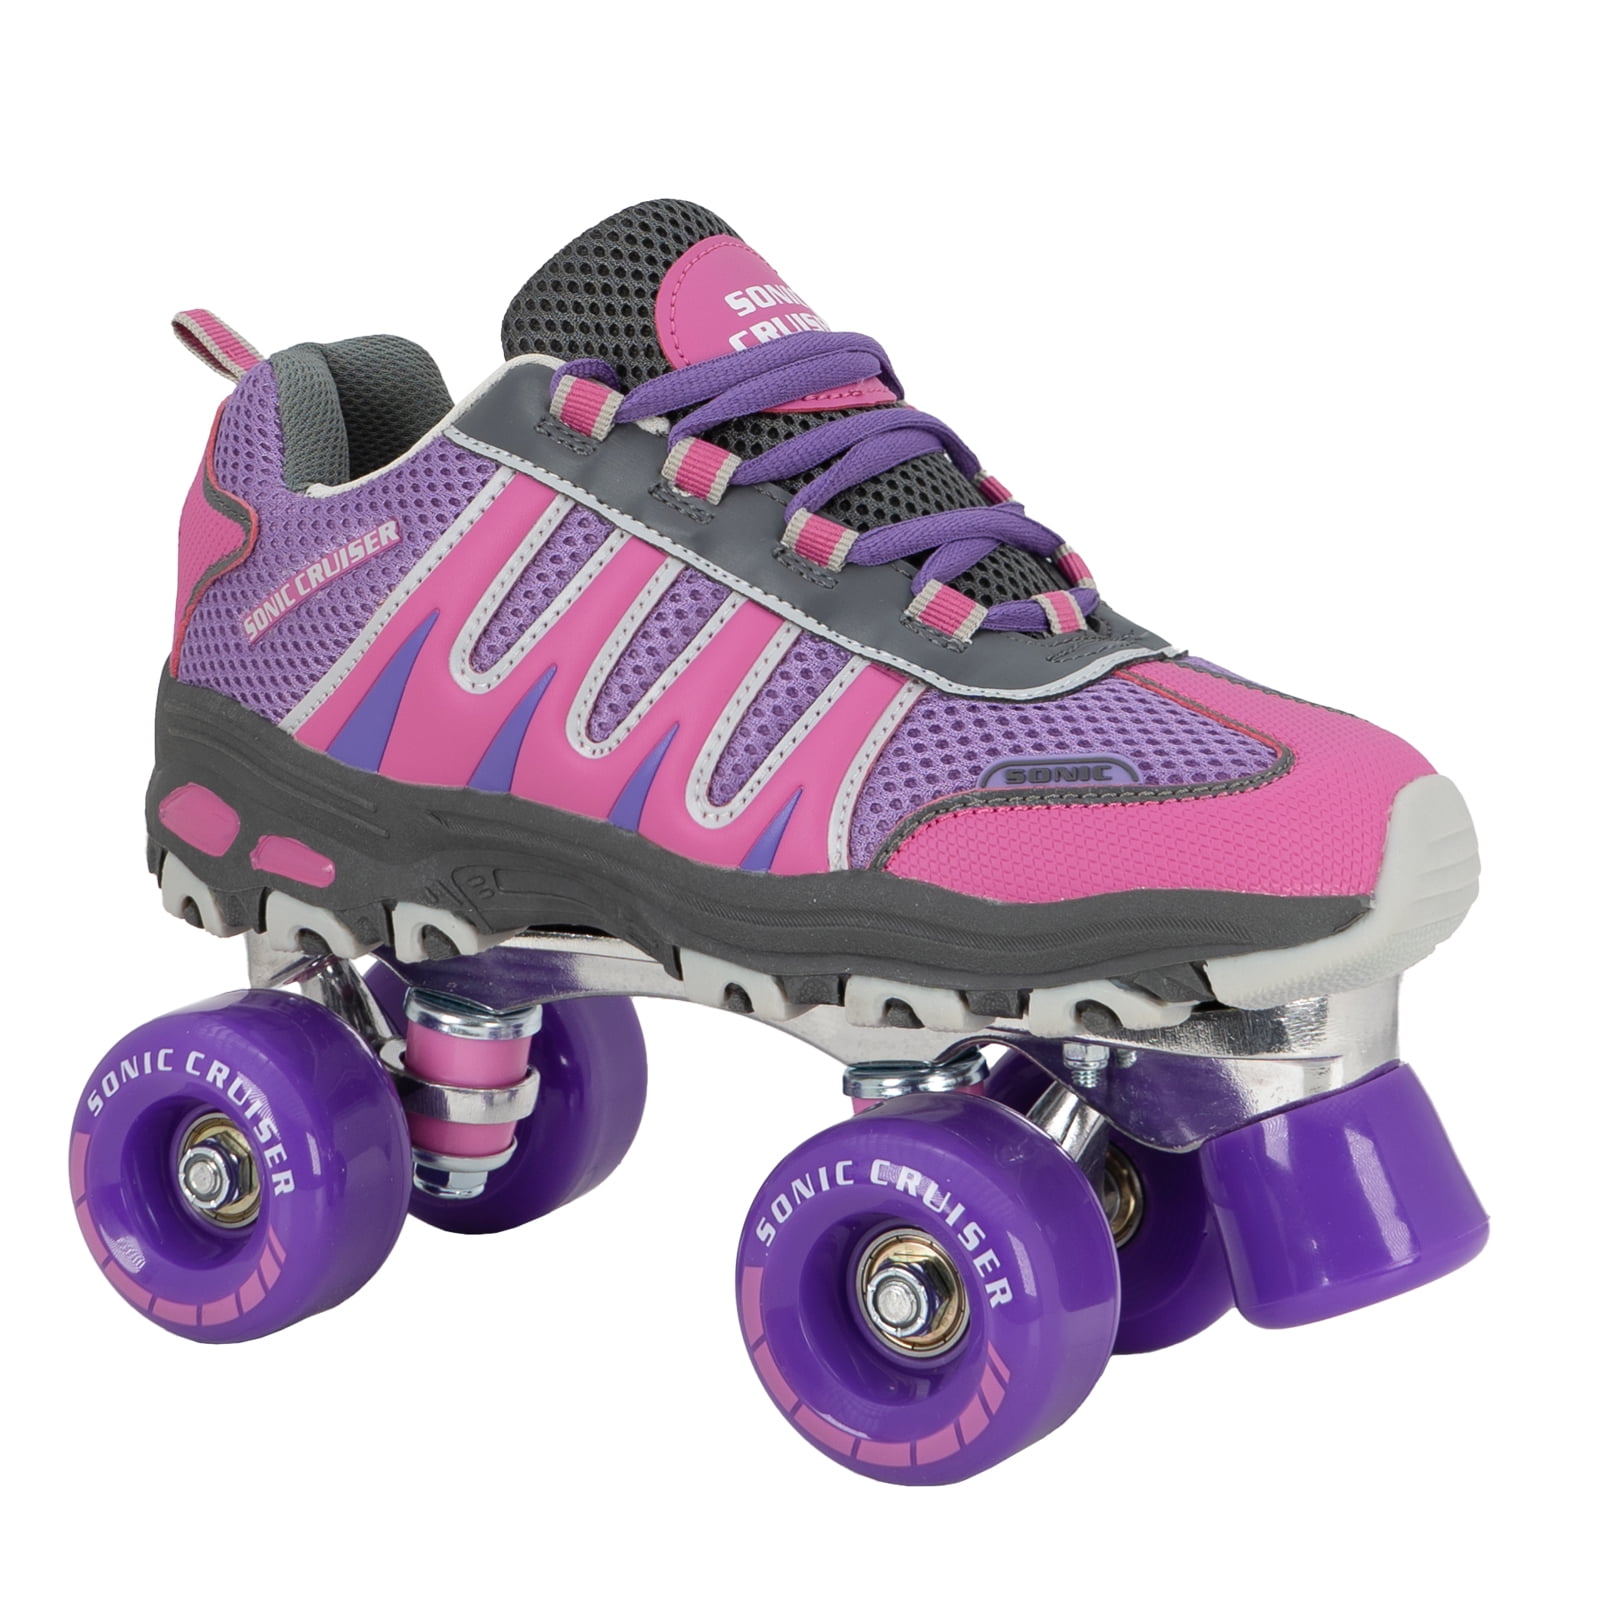 Nylon Plates w/Markers Kids Roller Skates Lenexa Color Me Kids Rolling Skates Unisex Quad Skates for Girls and Boys